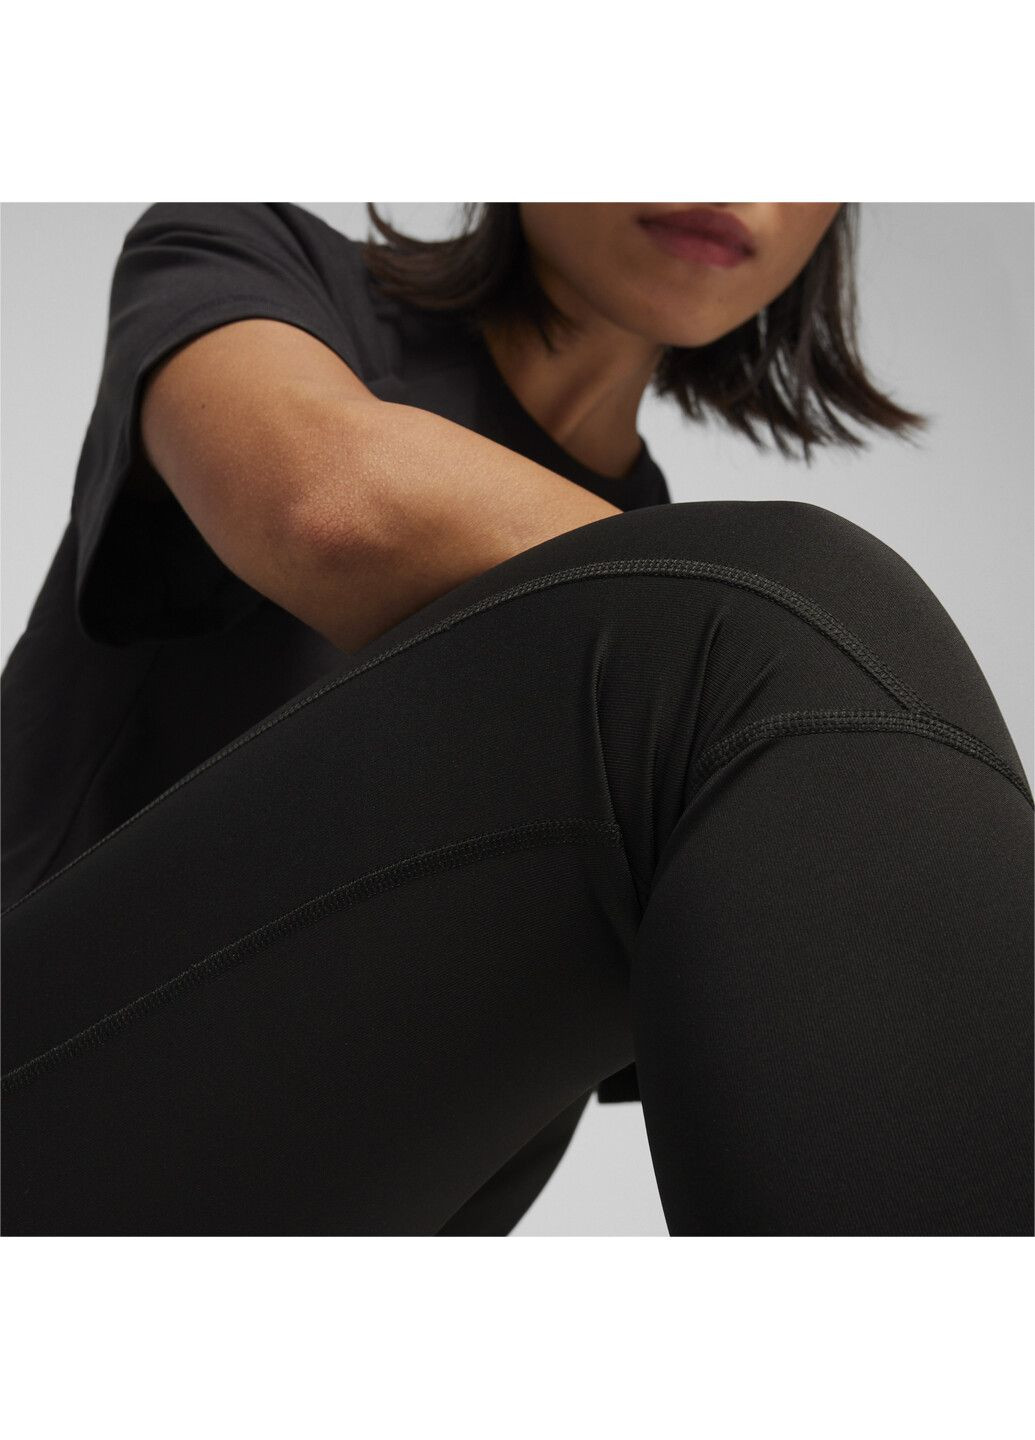 Черные демисезонные леггинсы evostripe women's leggings Puma